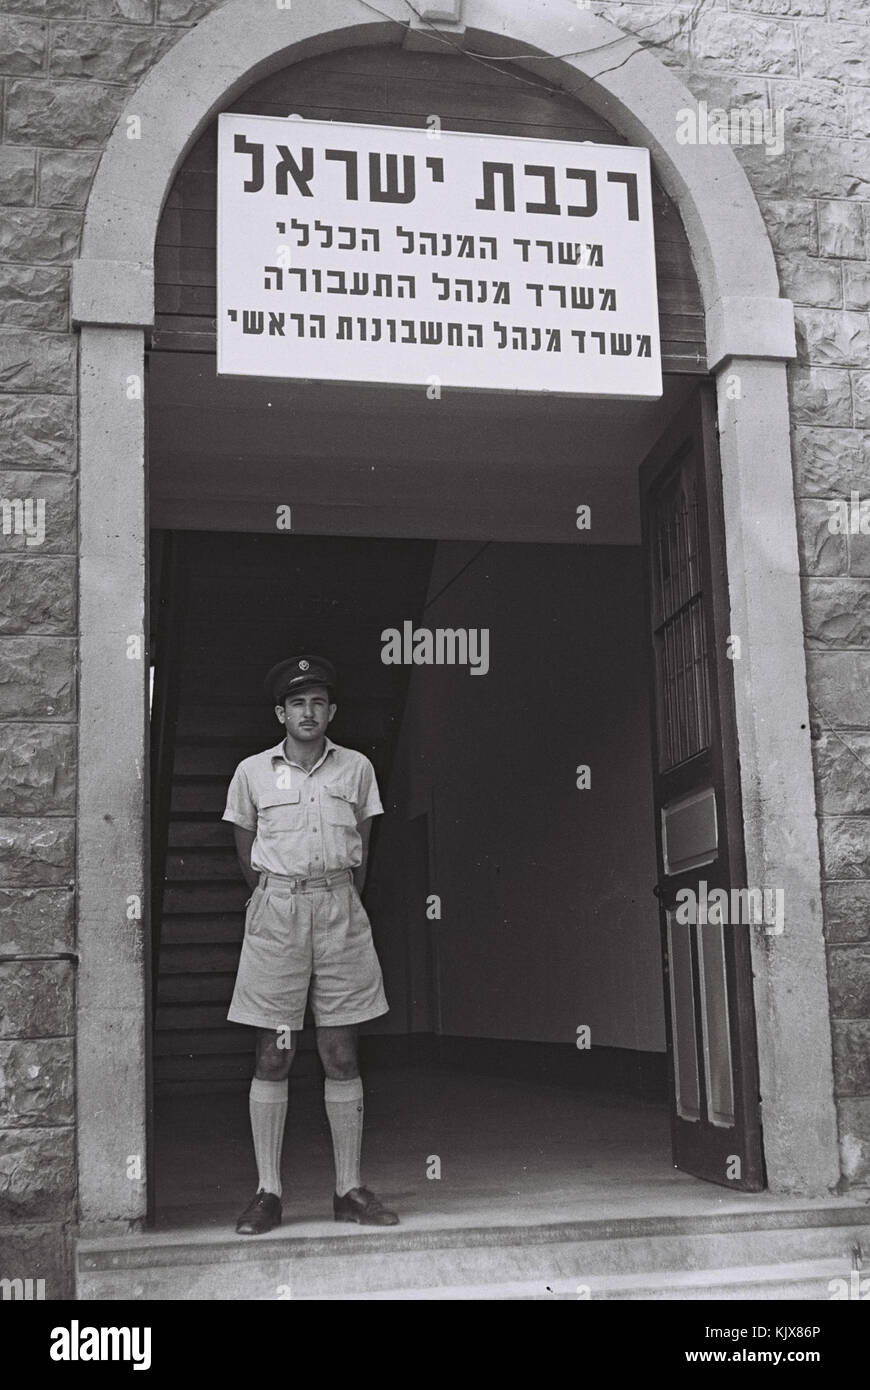 Israel Railway 1948 Stock Photo